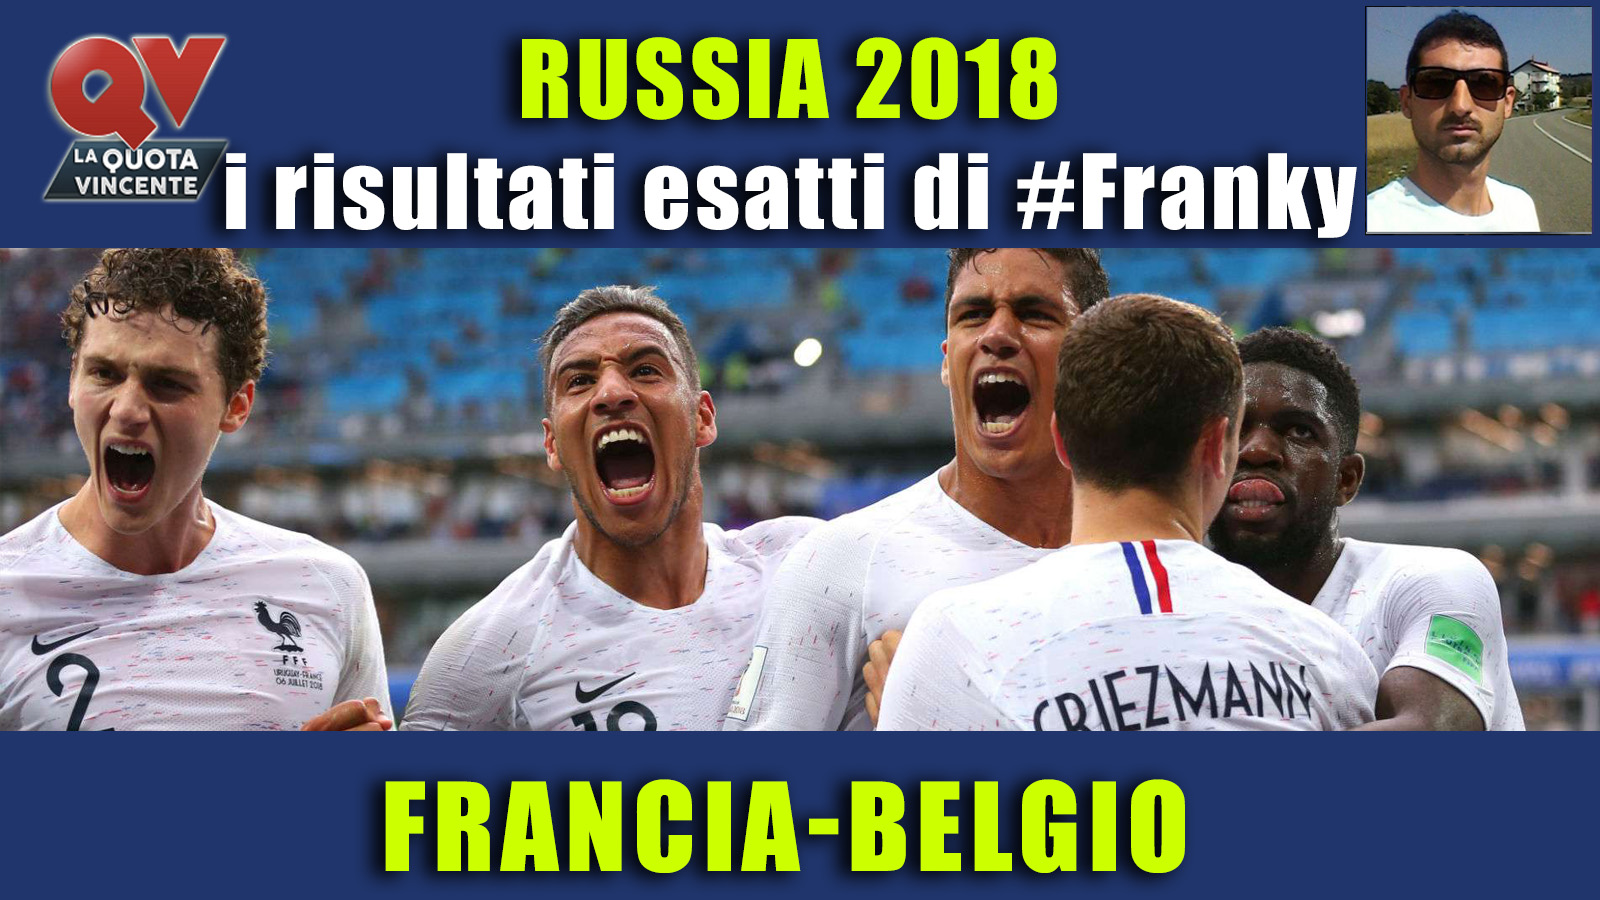 Pronostici risultati esatti Mondiali 10 luglio: le scelte di #FrankyDefa